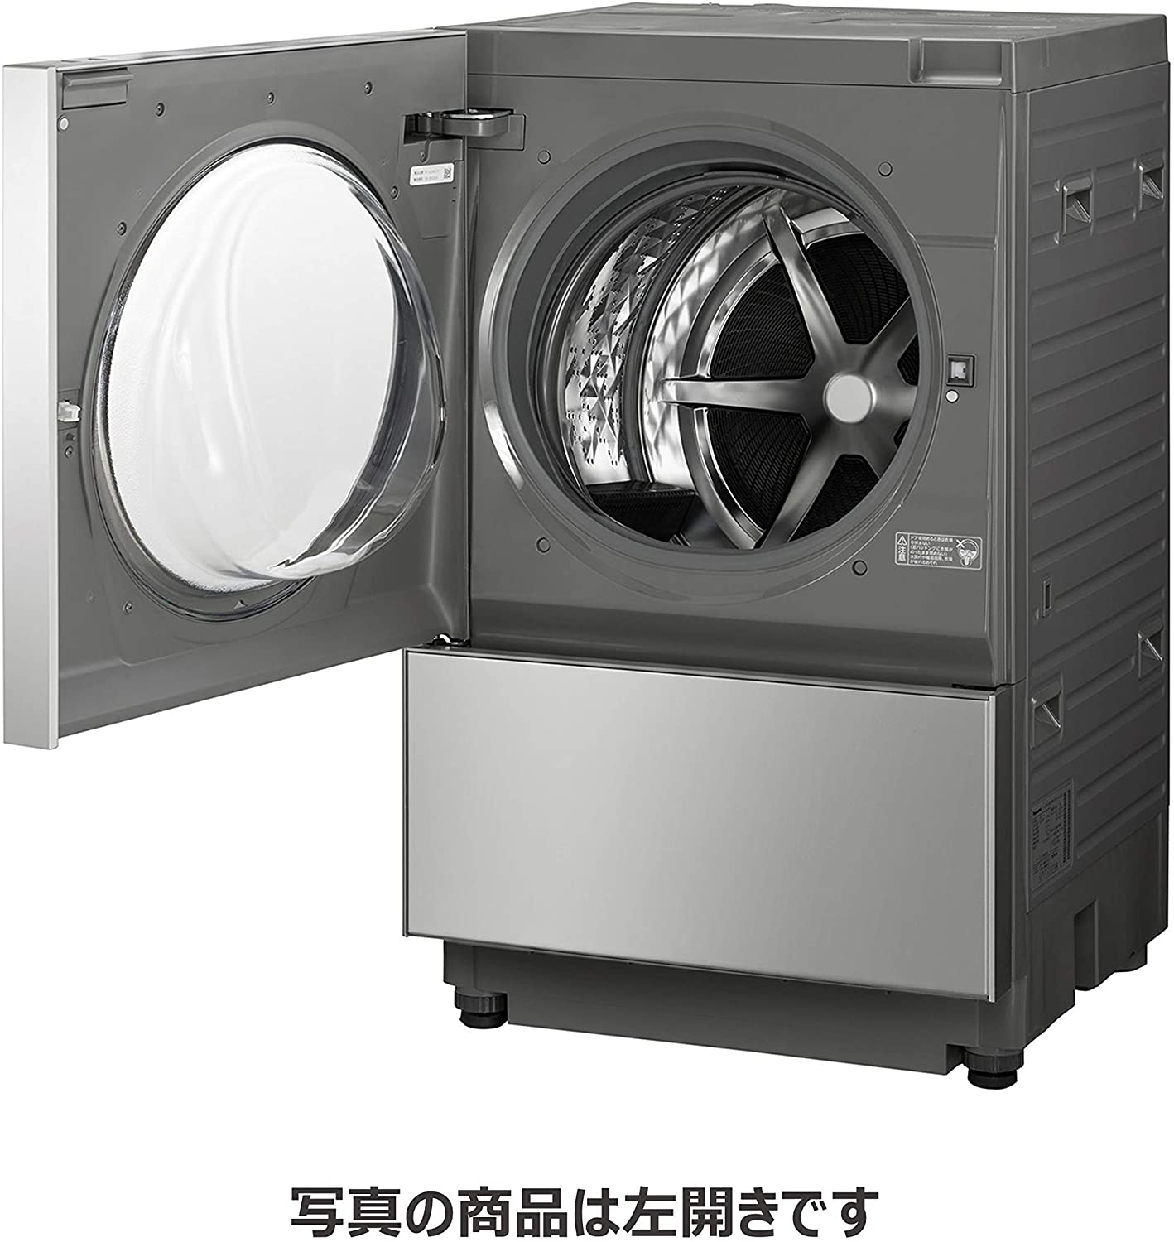 Panasonic(パナソニック) キューブル ななめドラム洗濯乾燥機 NA-VG2400の商品画像3 